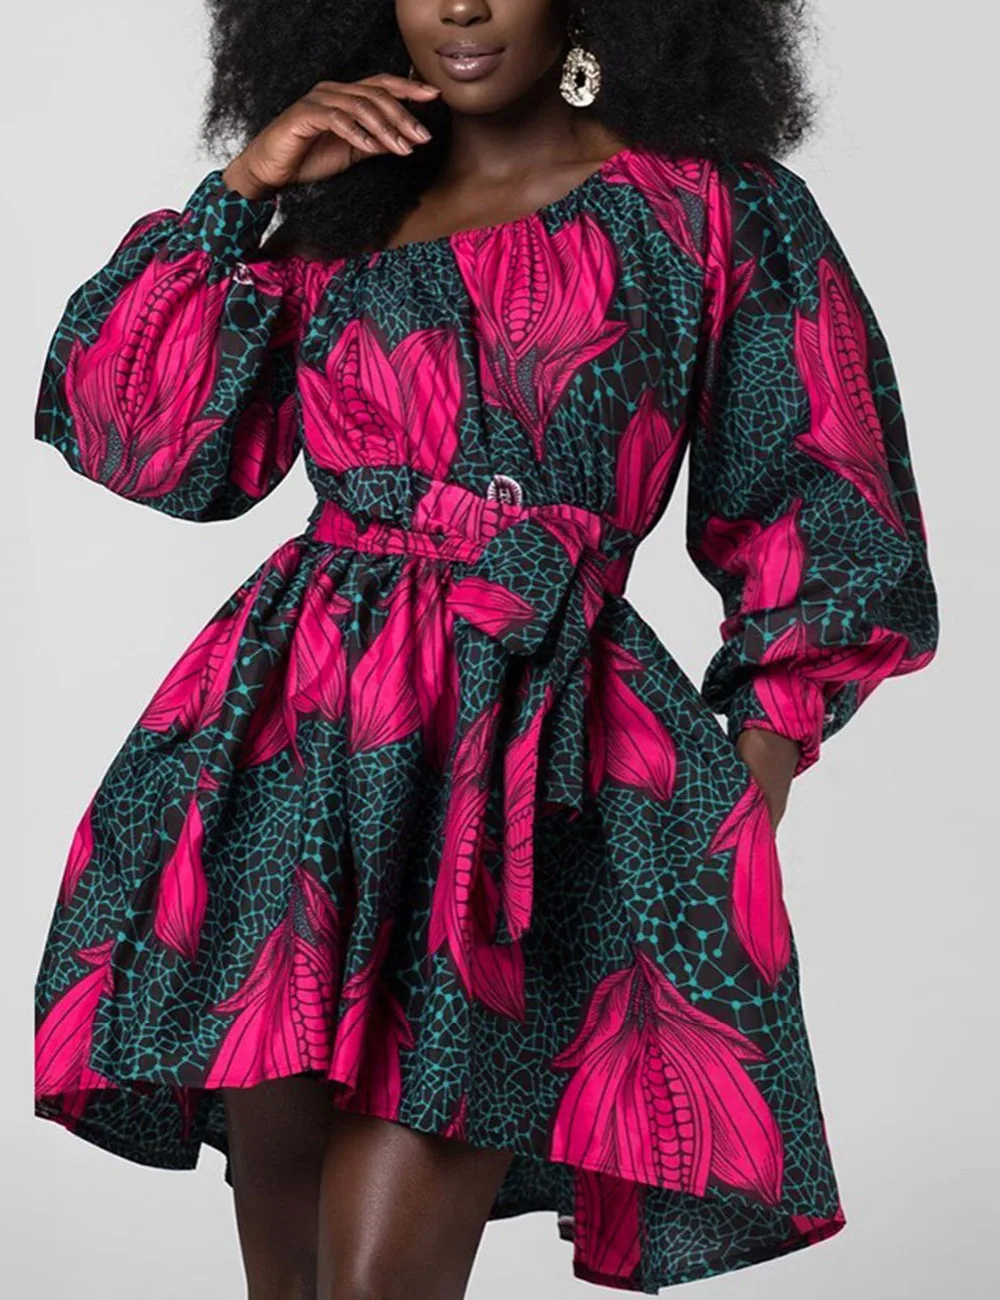 Fadzeco модные африканские платья для женщин тонкая талия сексуальная косой плечо мини платье пышные рукава Племенной Африканский принт одежда